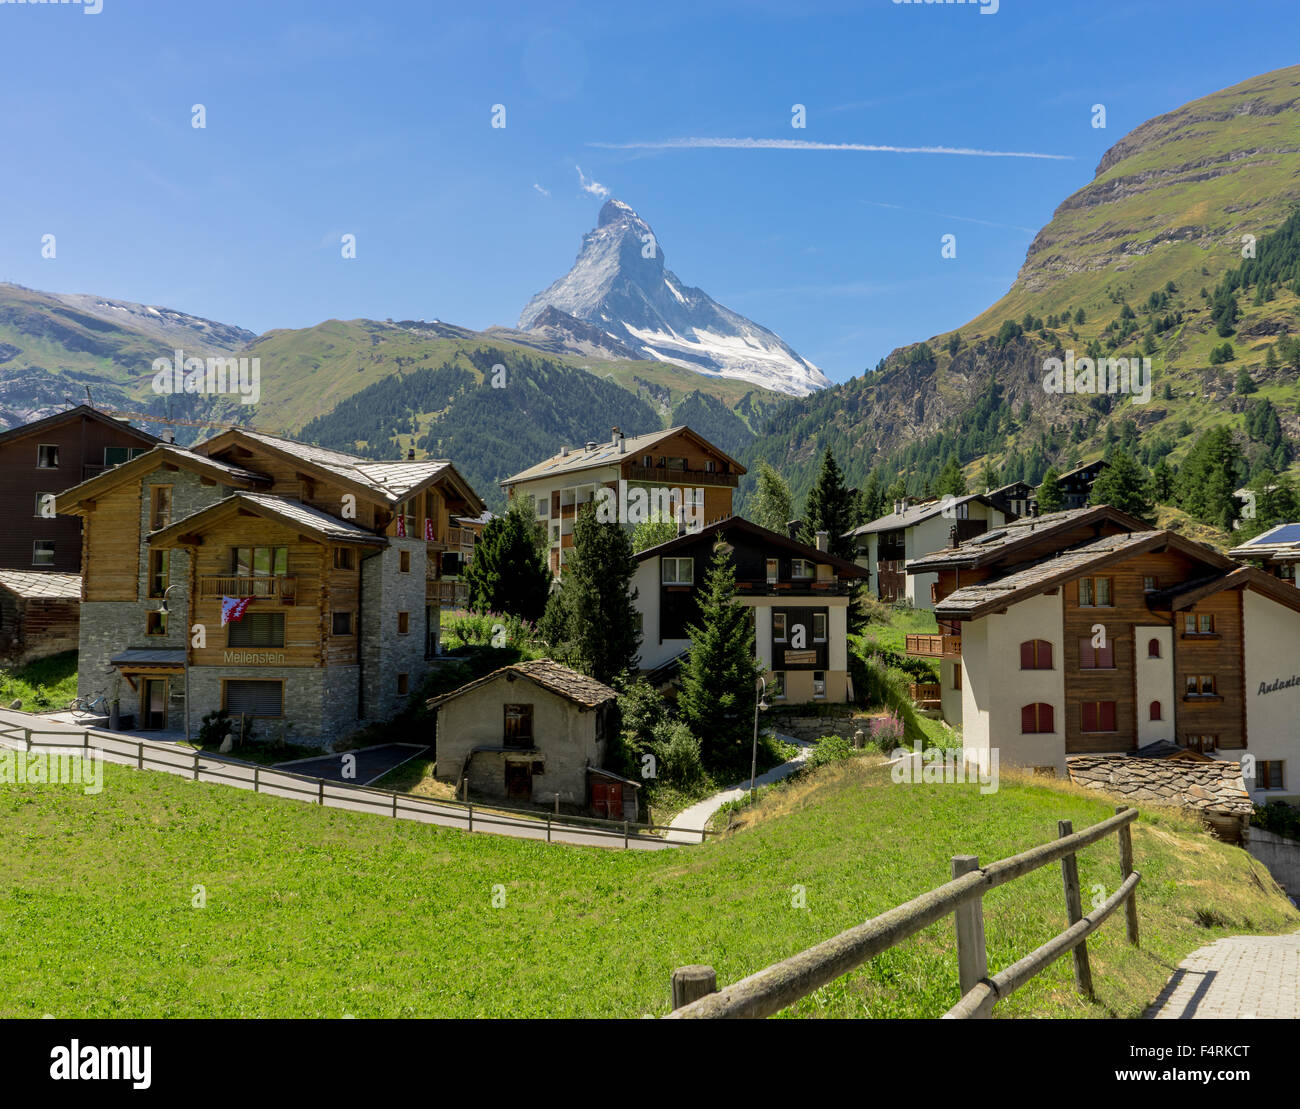 Un chalet village de Zermatt, au pied du Matterhorn peak. Juillet, 2015. Cervin, Suisse. Banque D'Images